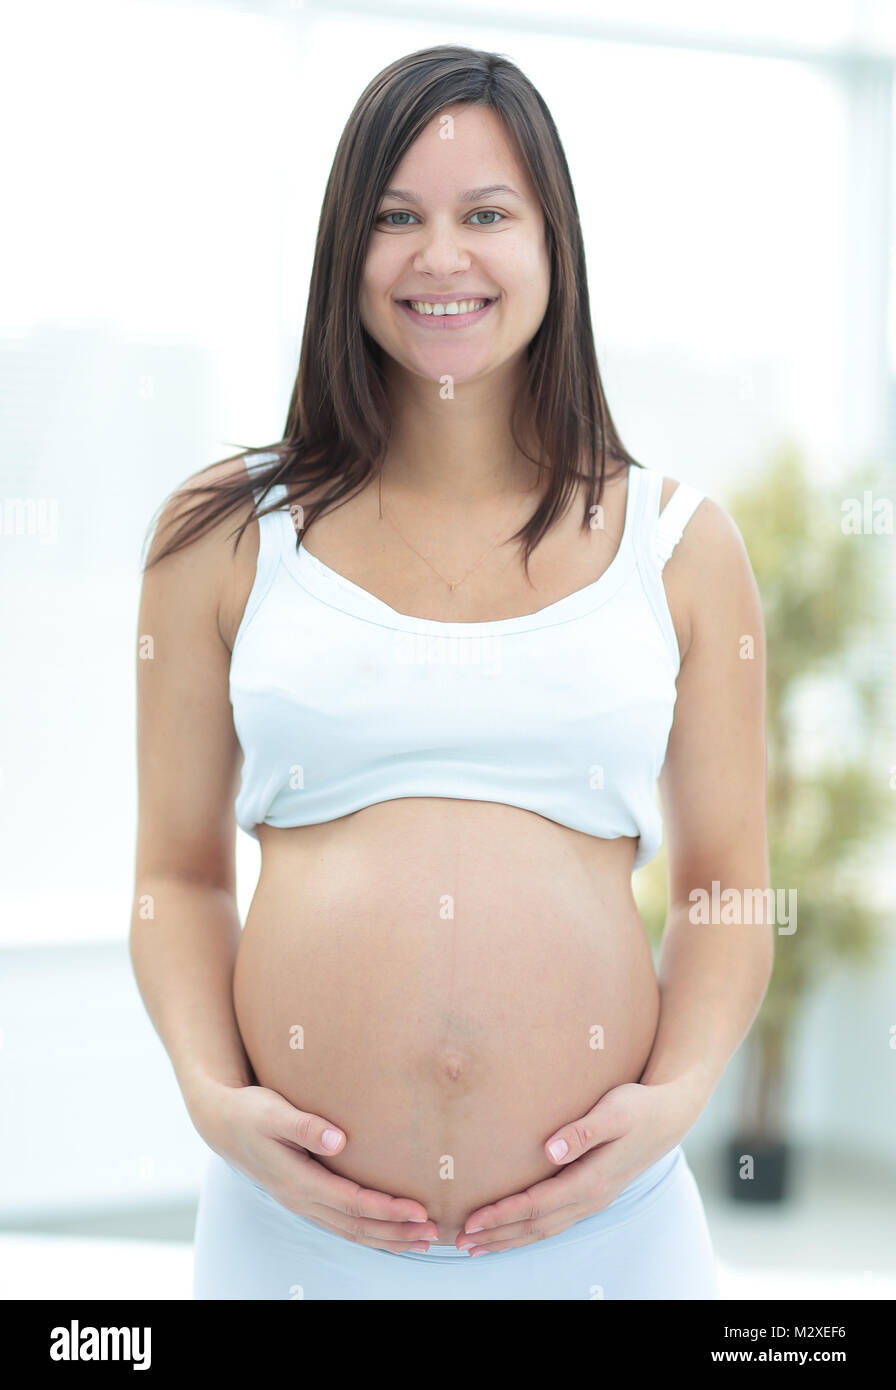 La gravidanza, riposo, persone e concetto di aspettativa Foto Stock